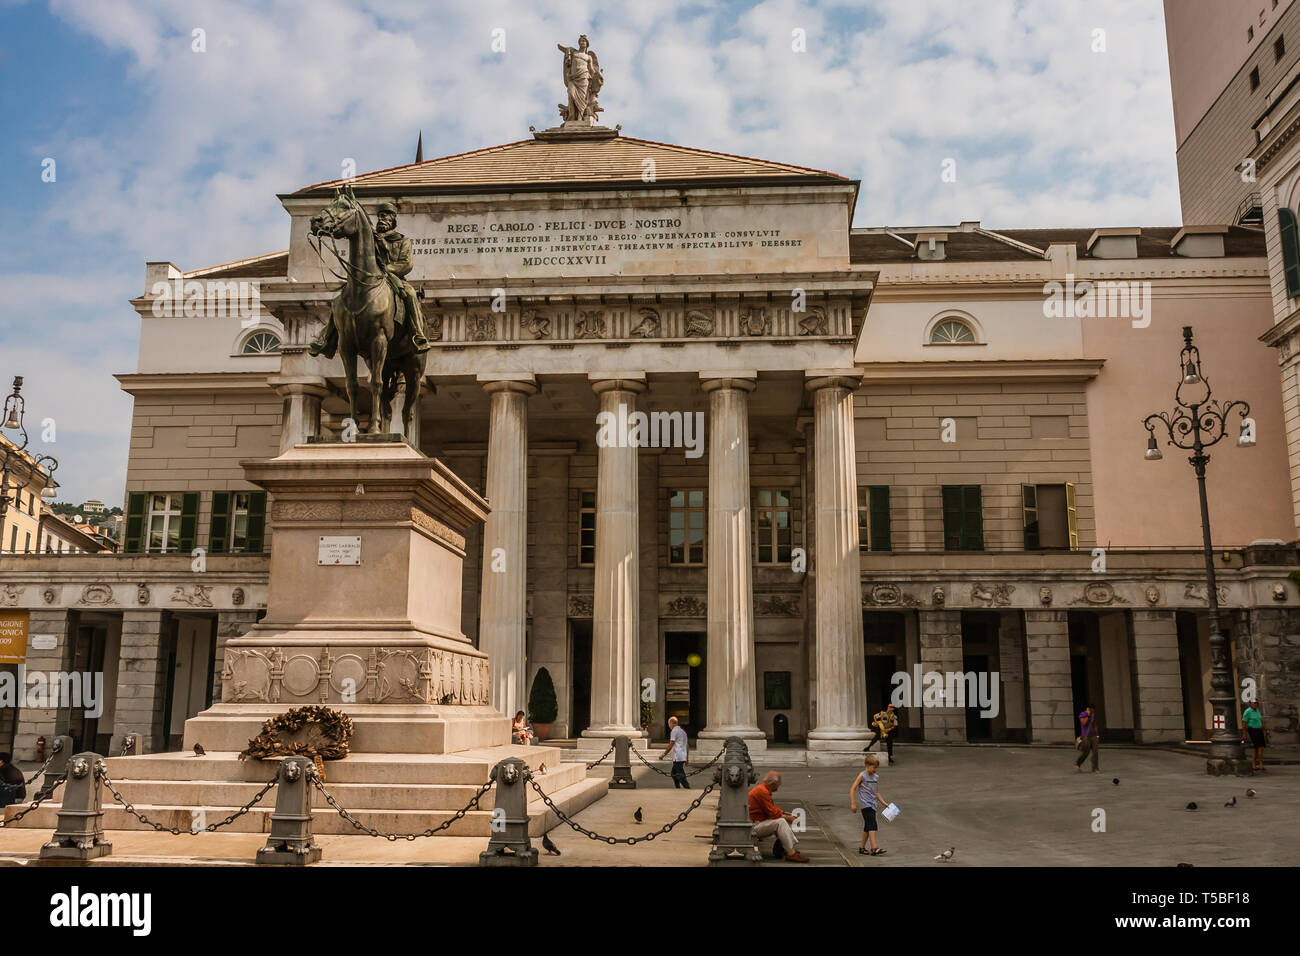 The Teatro Carlo Felice and monument to Garibaldi in Piazza De Ferrari, Genoa Stock Photo